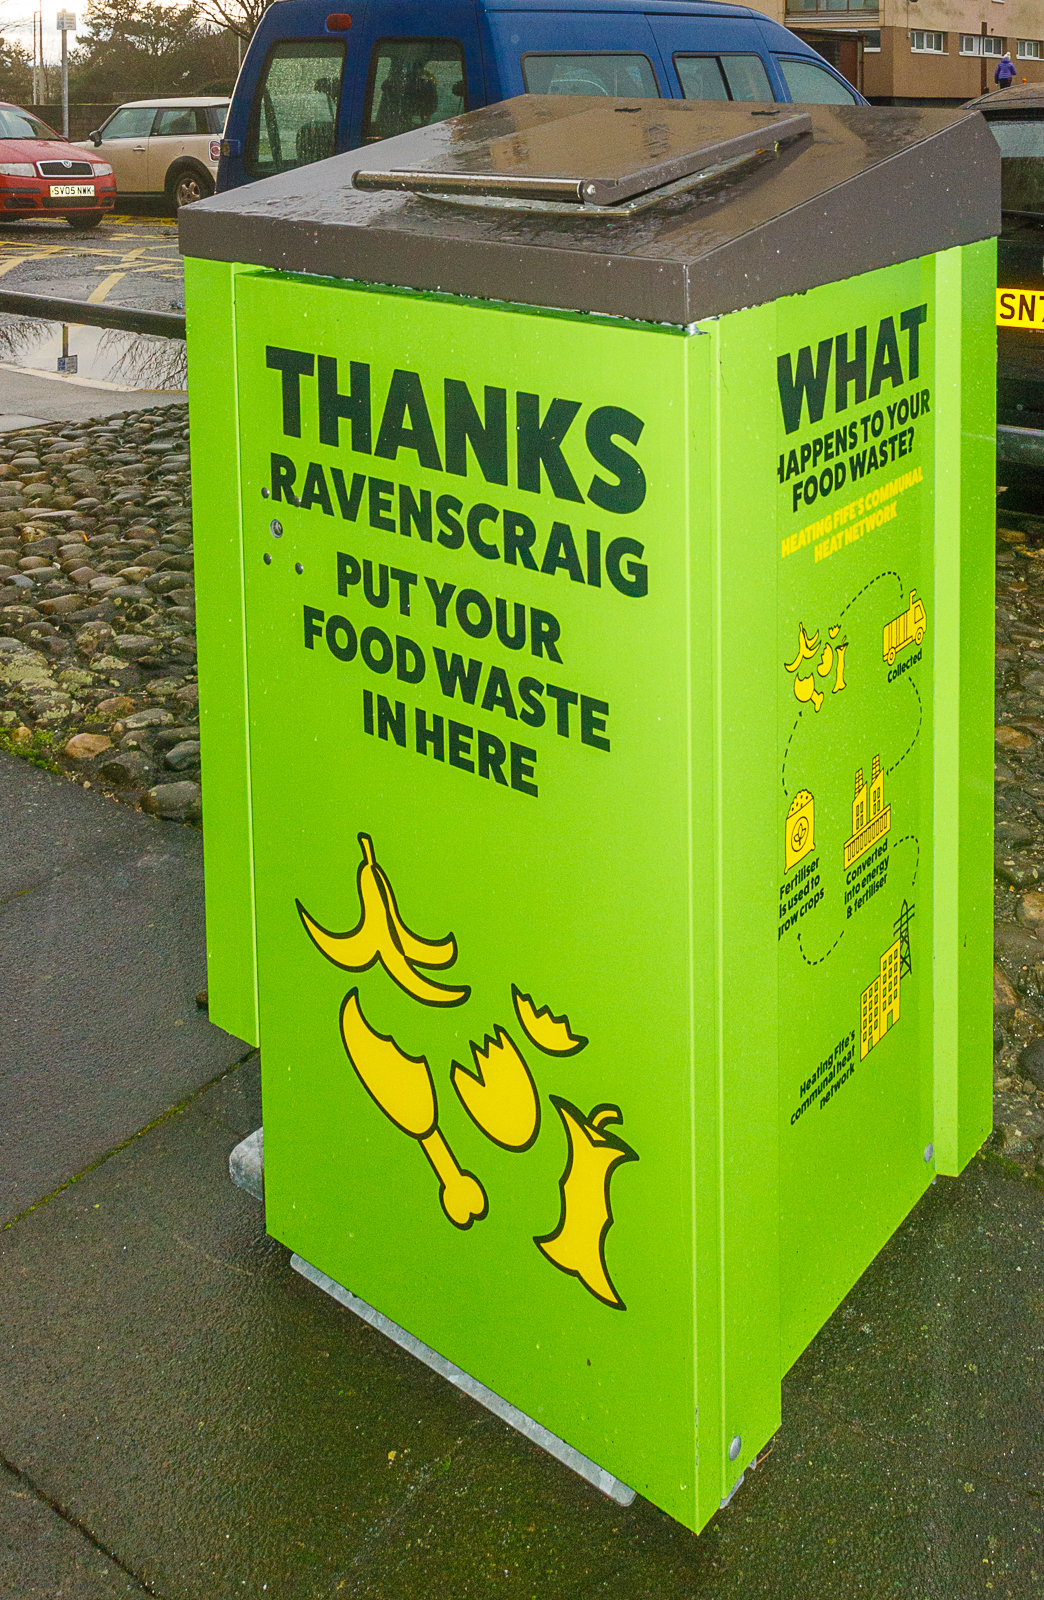 A food waste bin at Ravenscraig